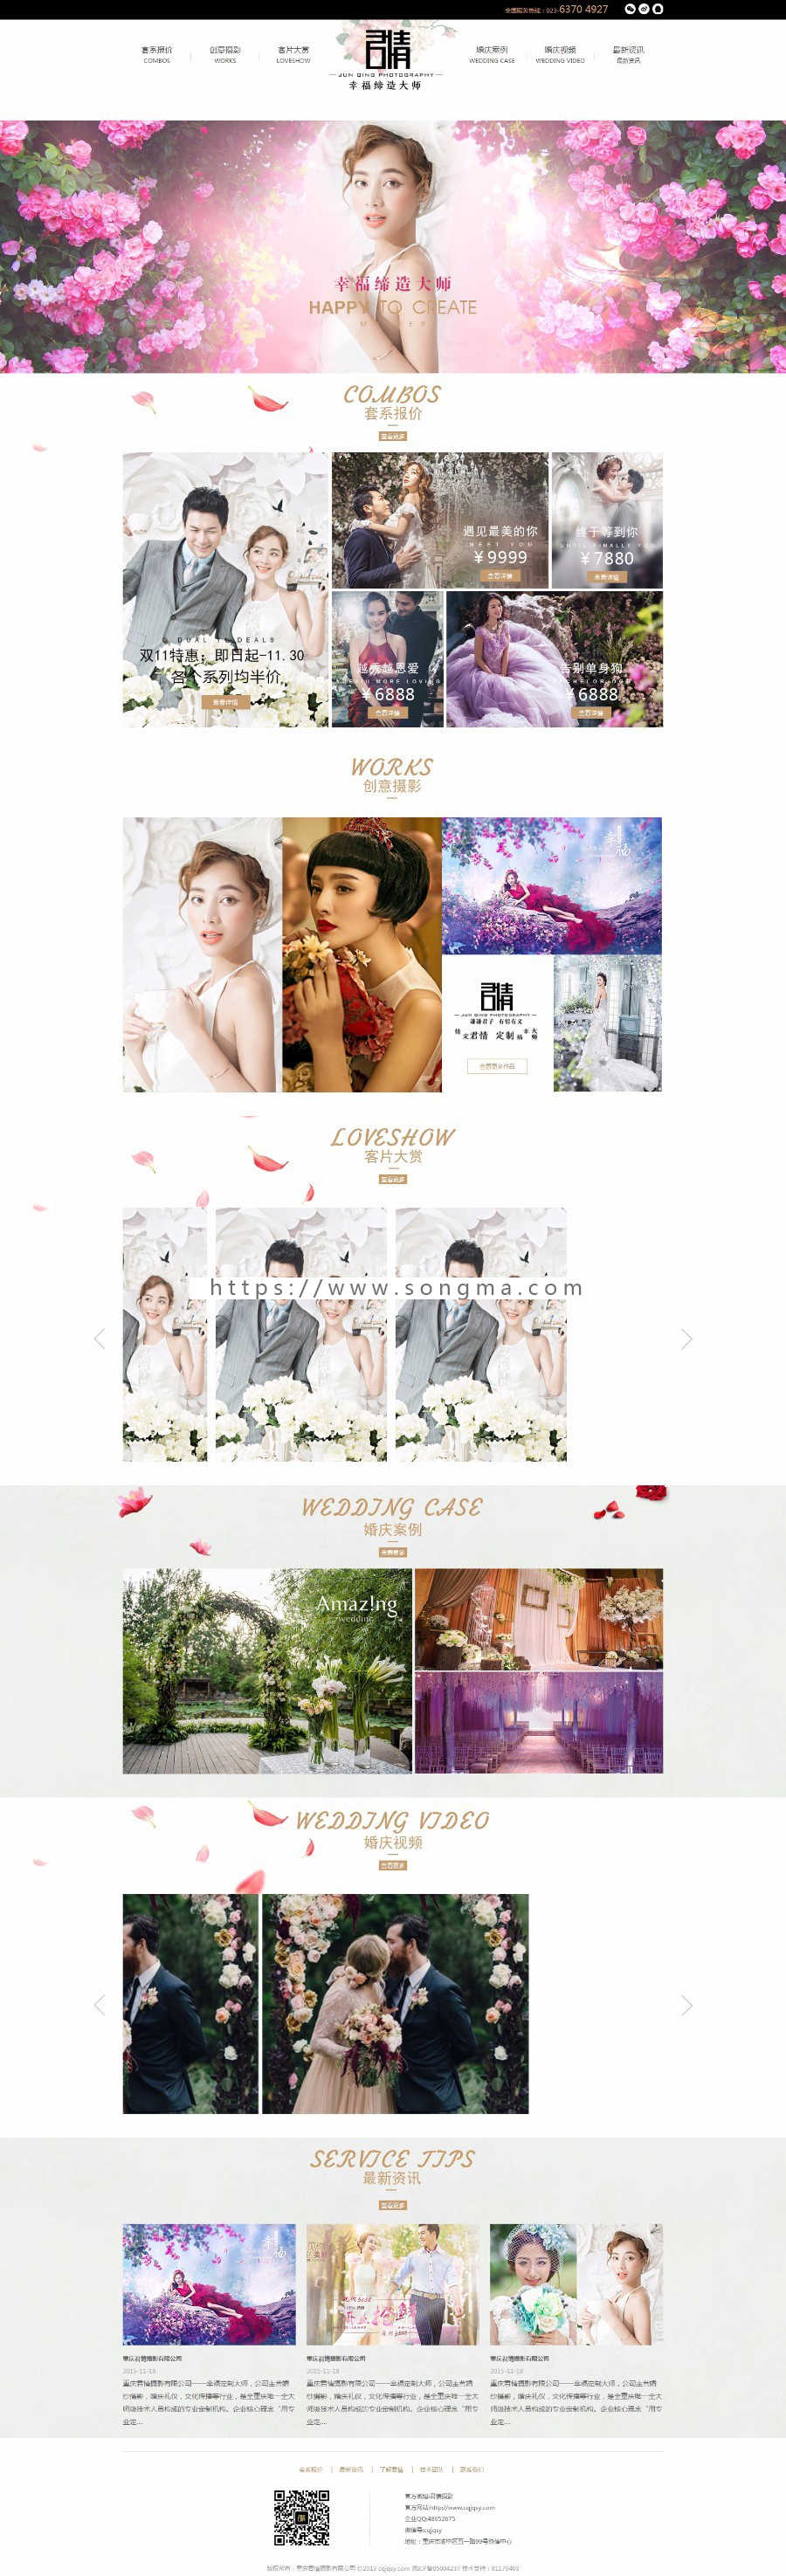 重庆君情摄影公司，婚纱摄影工作室网站，婚纱照拍摄公司网站源码